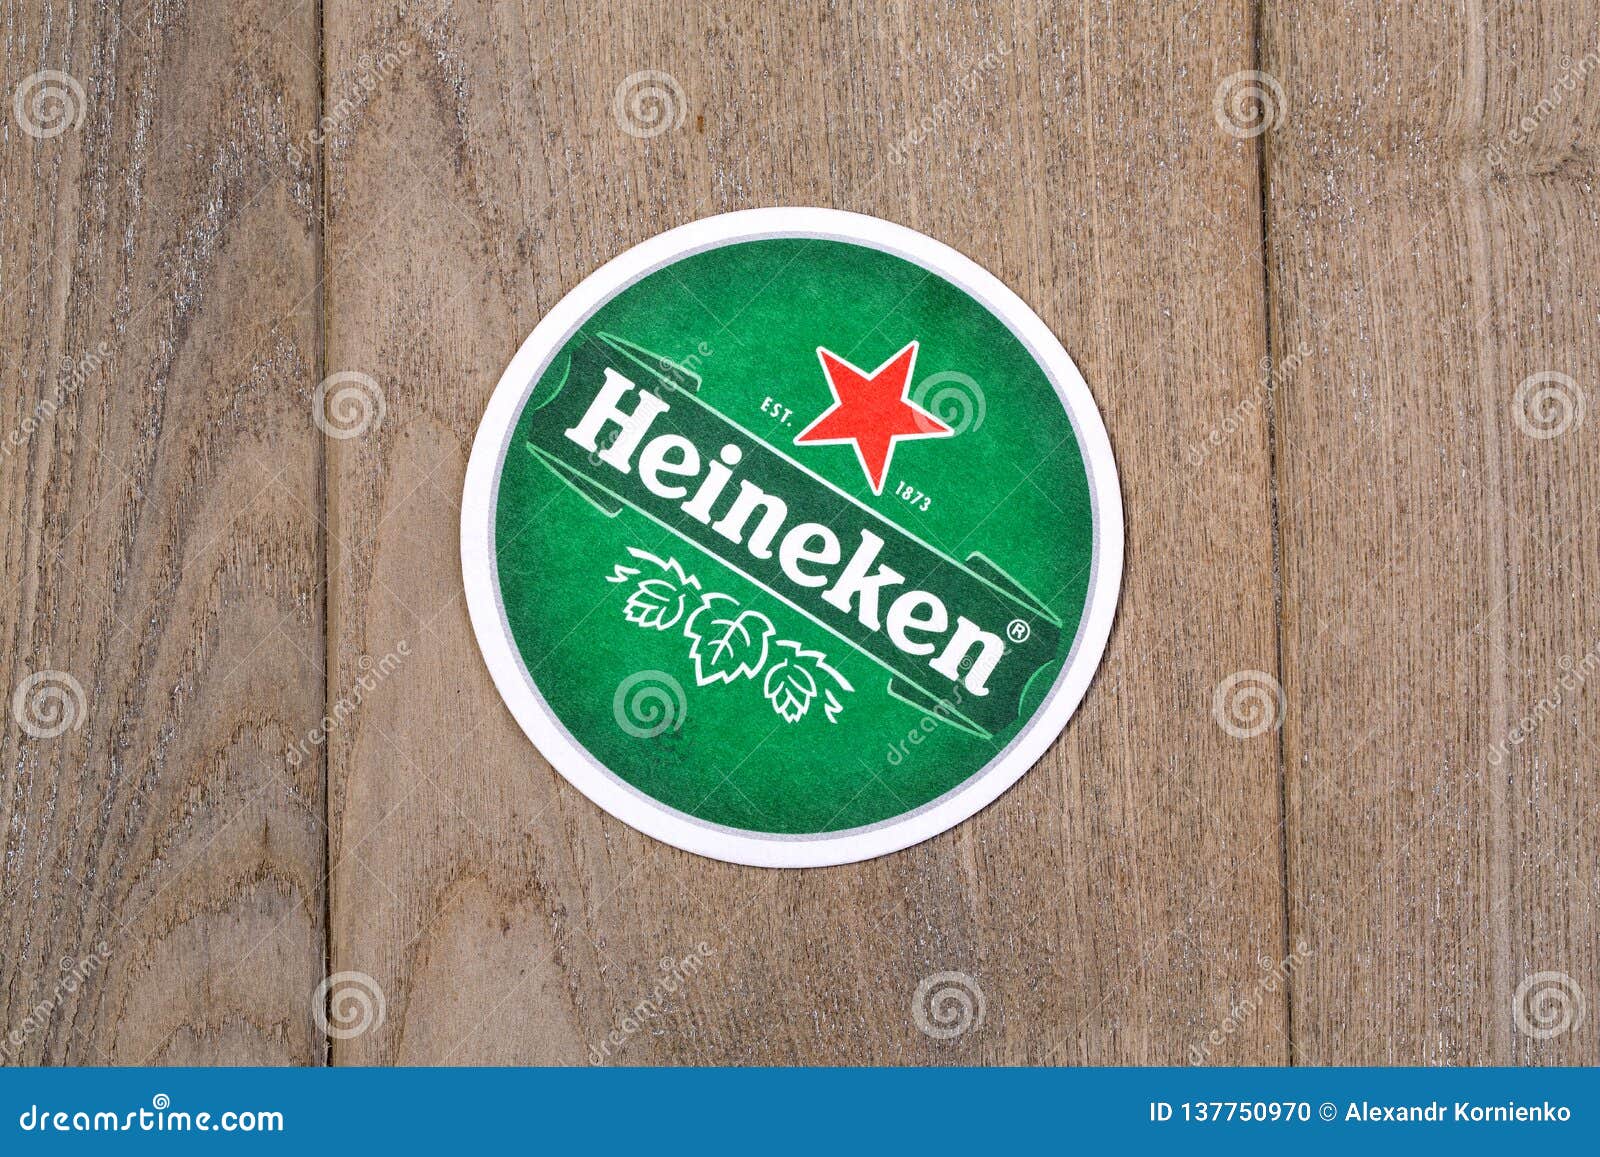 Heineken Beer Mats Sleeve 100 New 